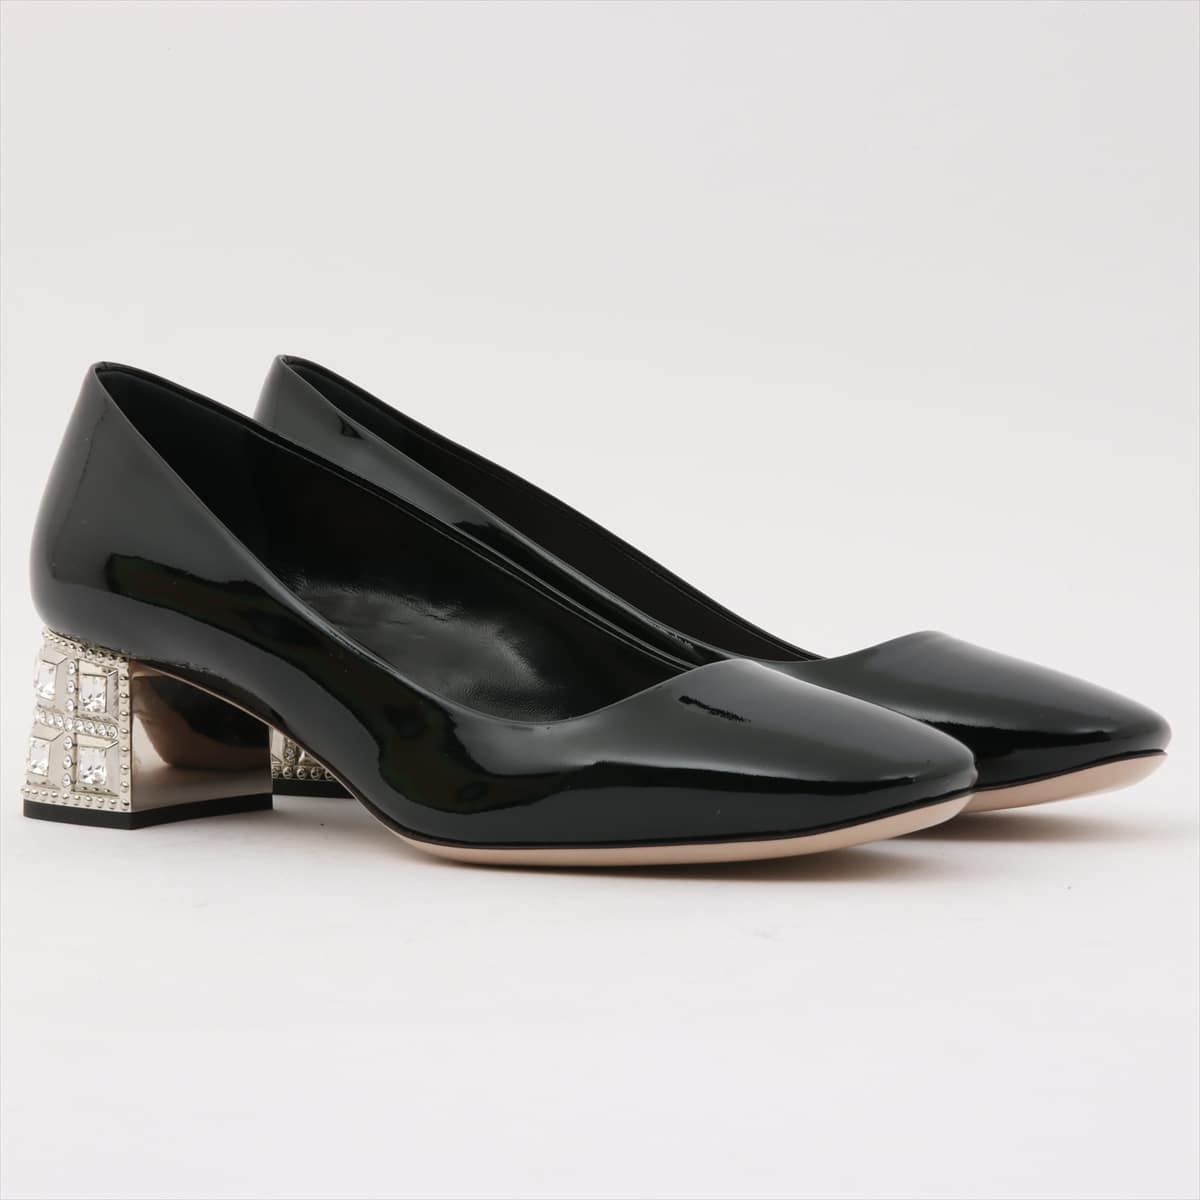 Miu Miu Patent leather Pumps 36 1/2 Ladies' Black Bijou heel